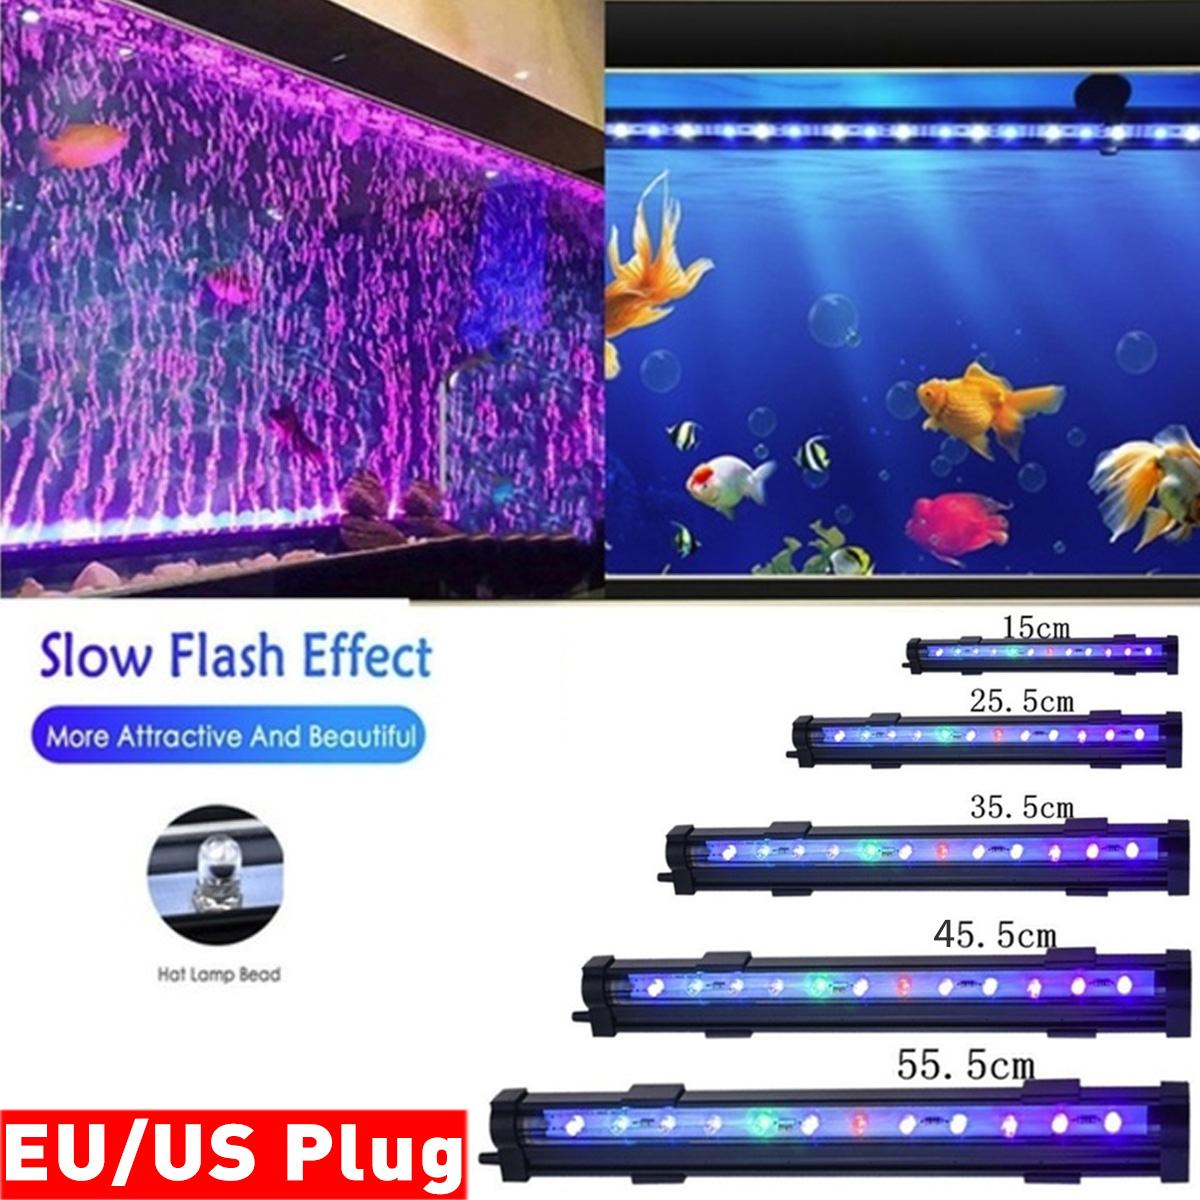 100-240v akvarium led bar lys vandtæt akvarium lys 15-55.5cm undervands ledet lys lampe til akvarier dekor belysning